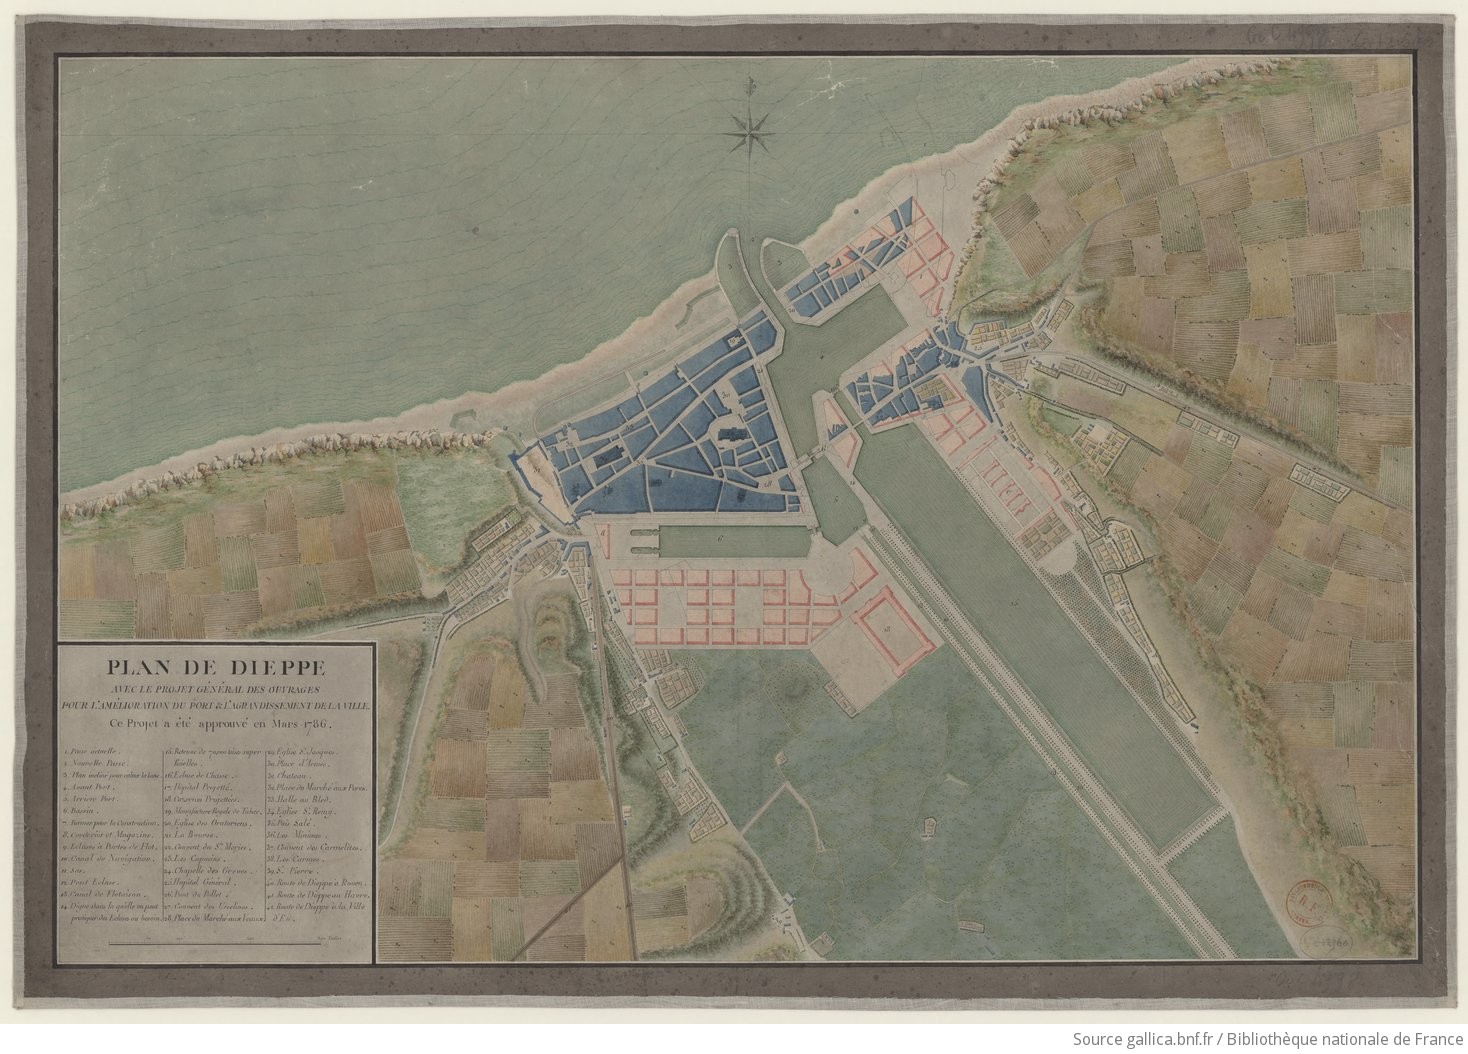 Plan de Dieppe avec le projet général des ouvrages pour l'amélioration du port et l'agrandissement de la ville... approuvé en mars 1786